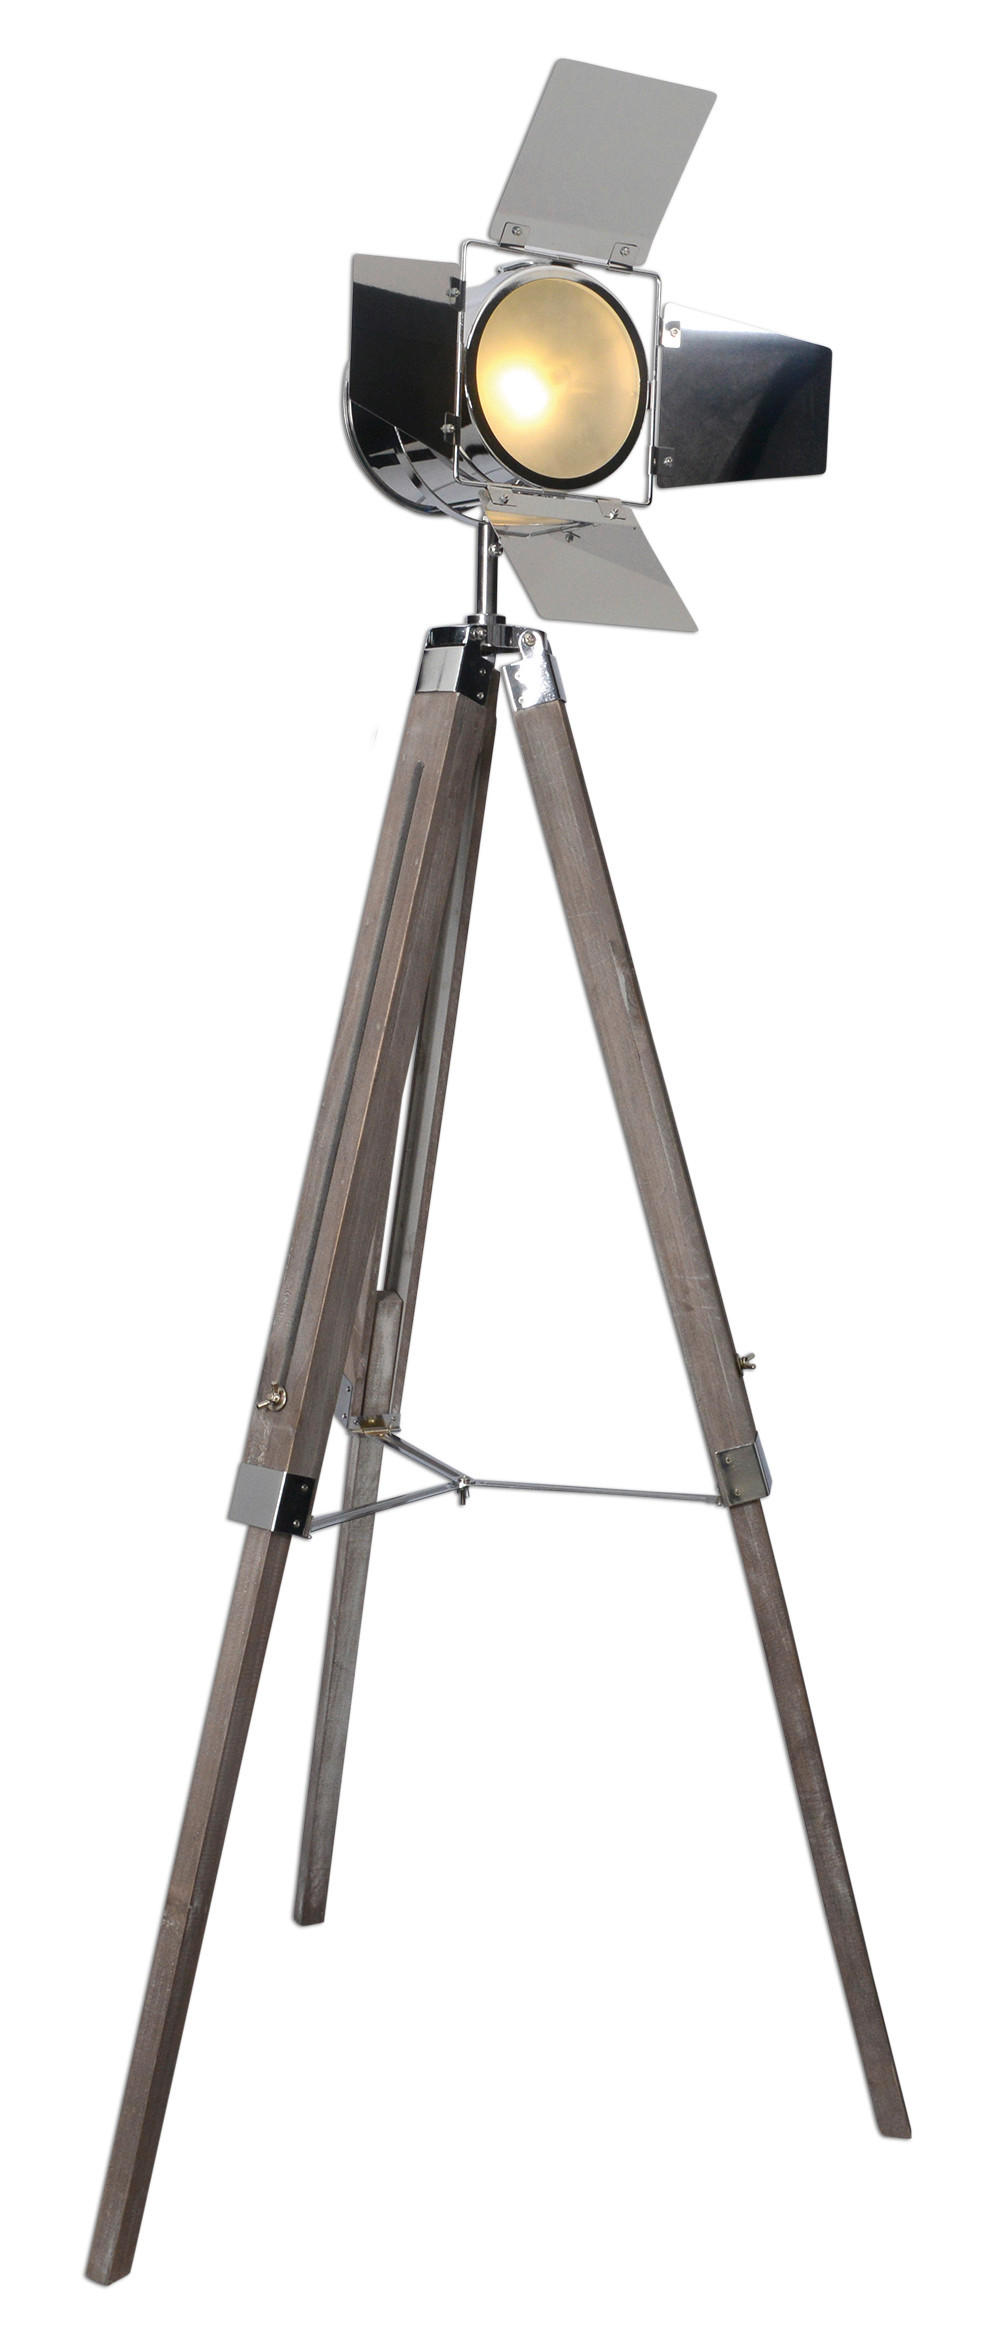 STEHLEUCHTE 71/100-140 cm    - Chromfarben/Braun, Design, Holz/Metall (71/100-140cm) - Näve